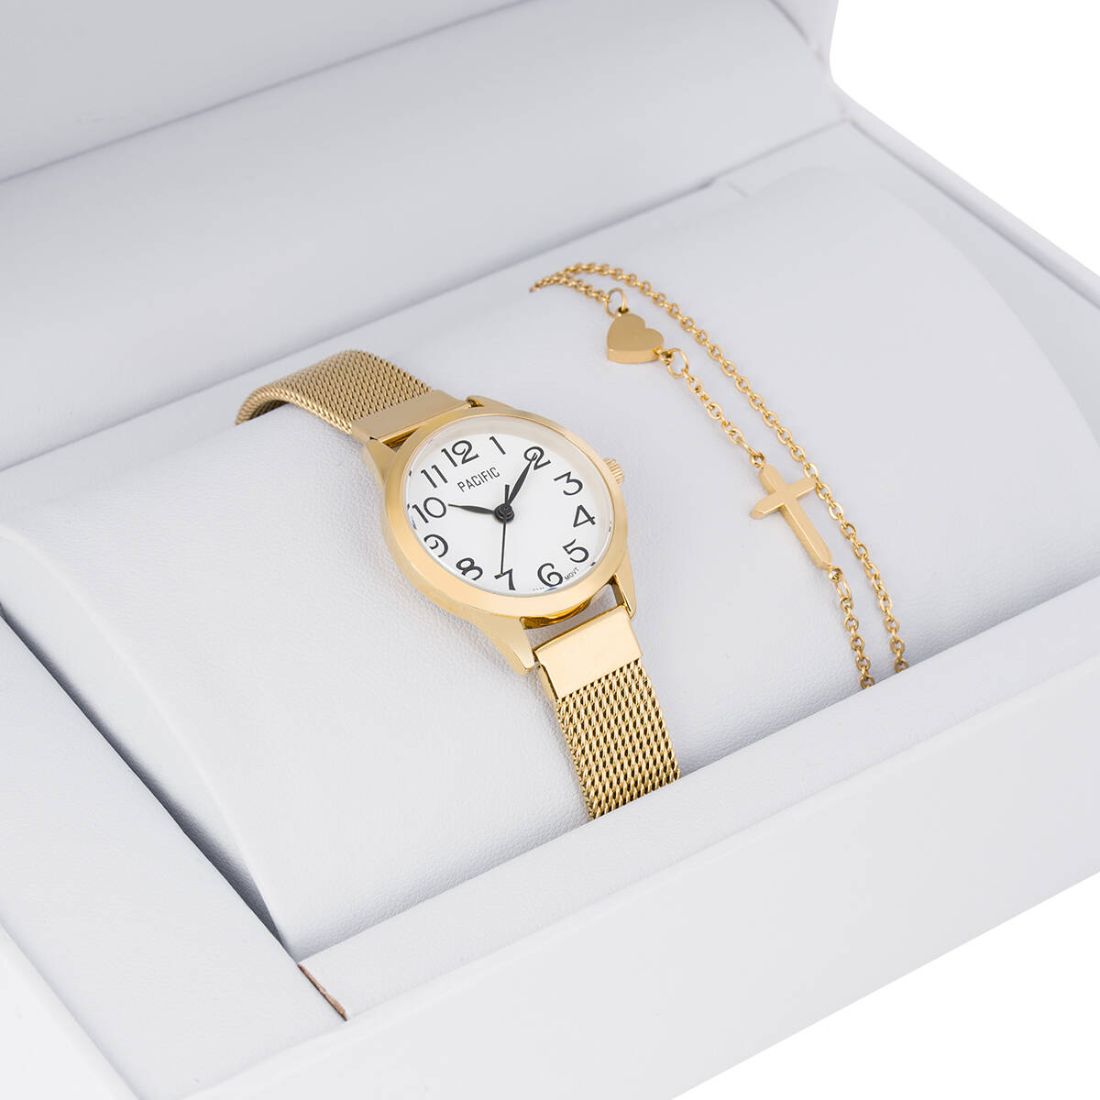 Zestaw prezentowy zegarek i bransoletka Pacific X6131-02B prezent na komunię dla dziewczynki złoty